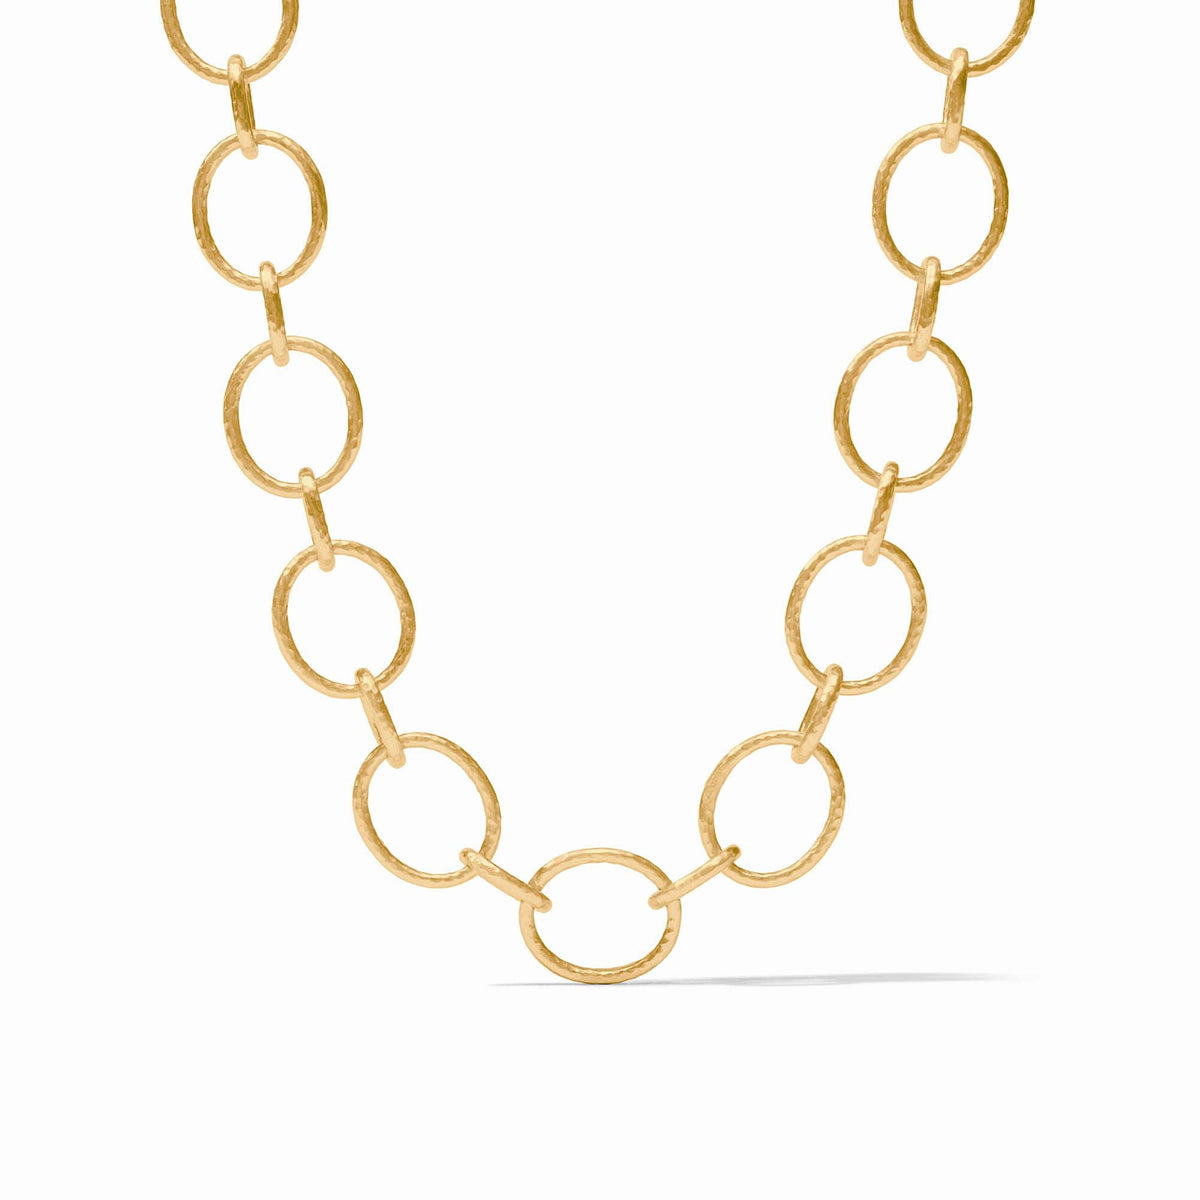 Julie Vos - Catalina Light Link Necklace, Gold